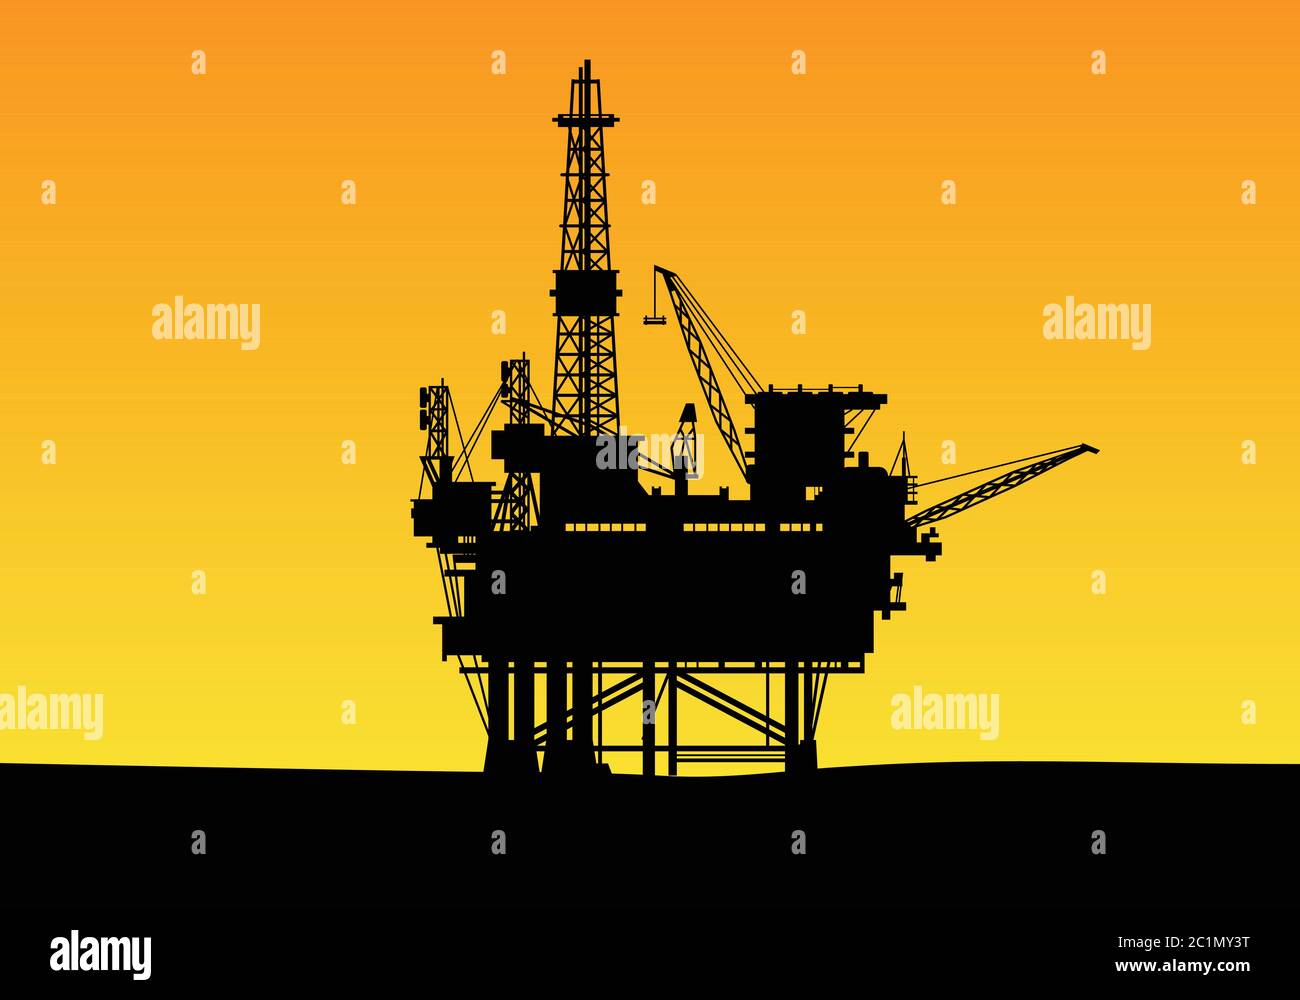 silueta de una construcción de perforación petrolera en alta mar con torres altas y grúa. Adecuado para plantilla de diseño de fondo de empresa de gas y energía. Ilustración del Vector